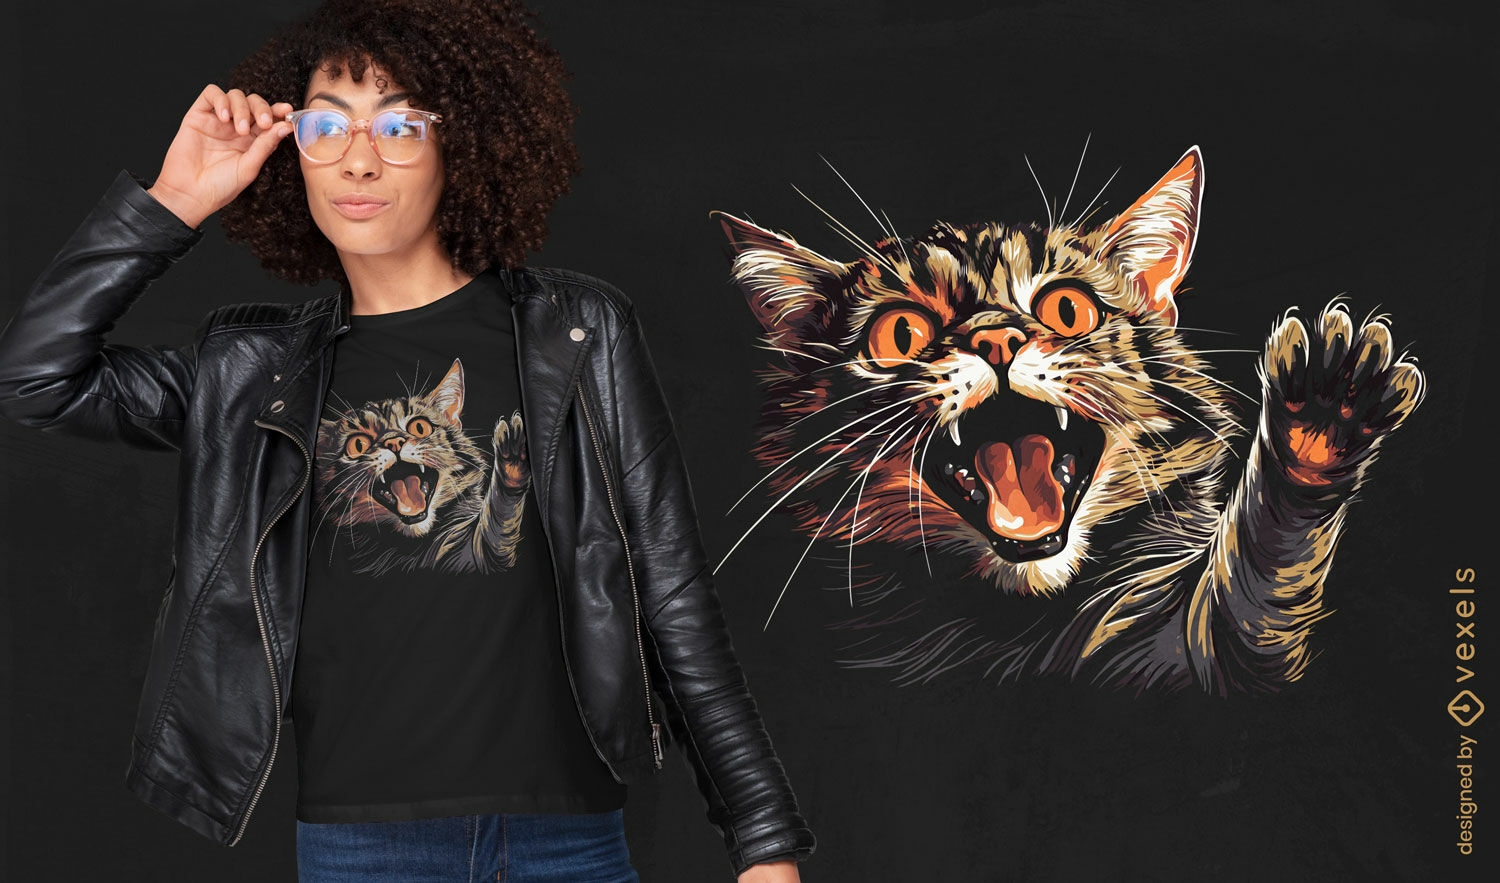 Diseño de camiseta con ilustración de gatito enojado.